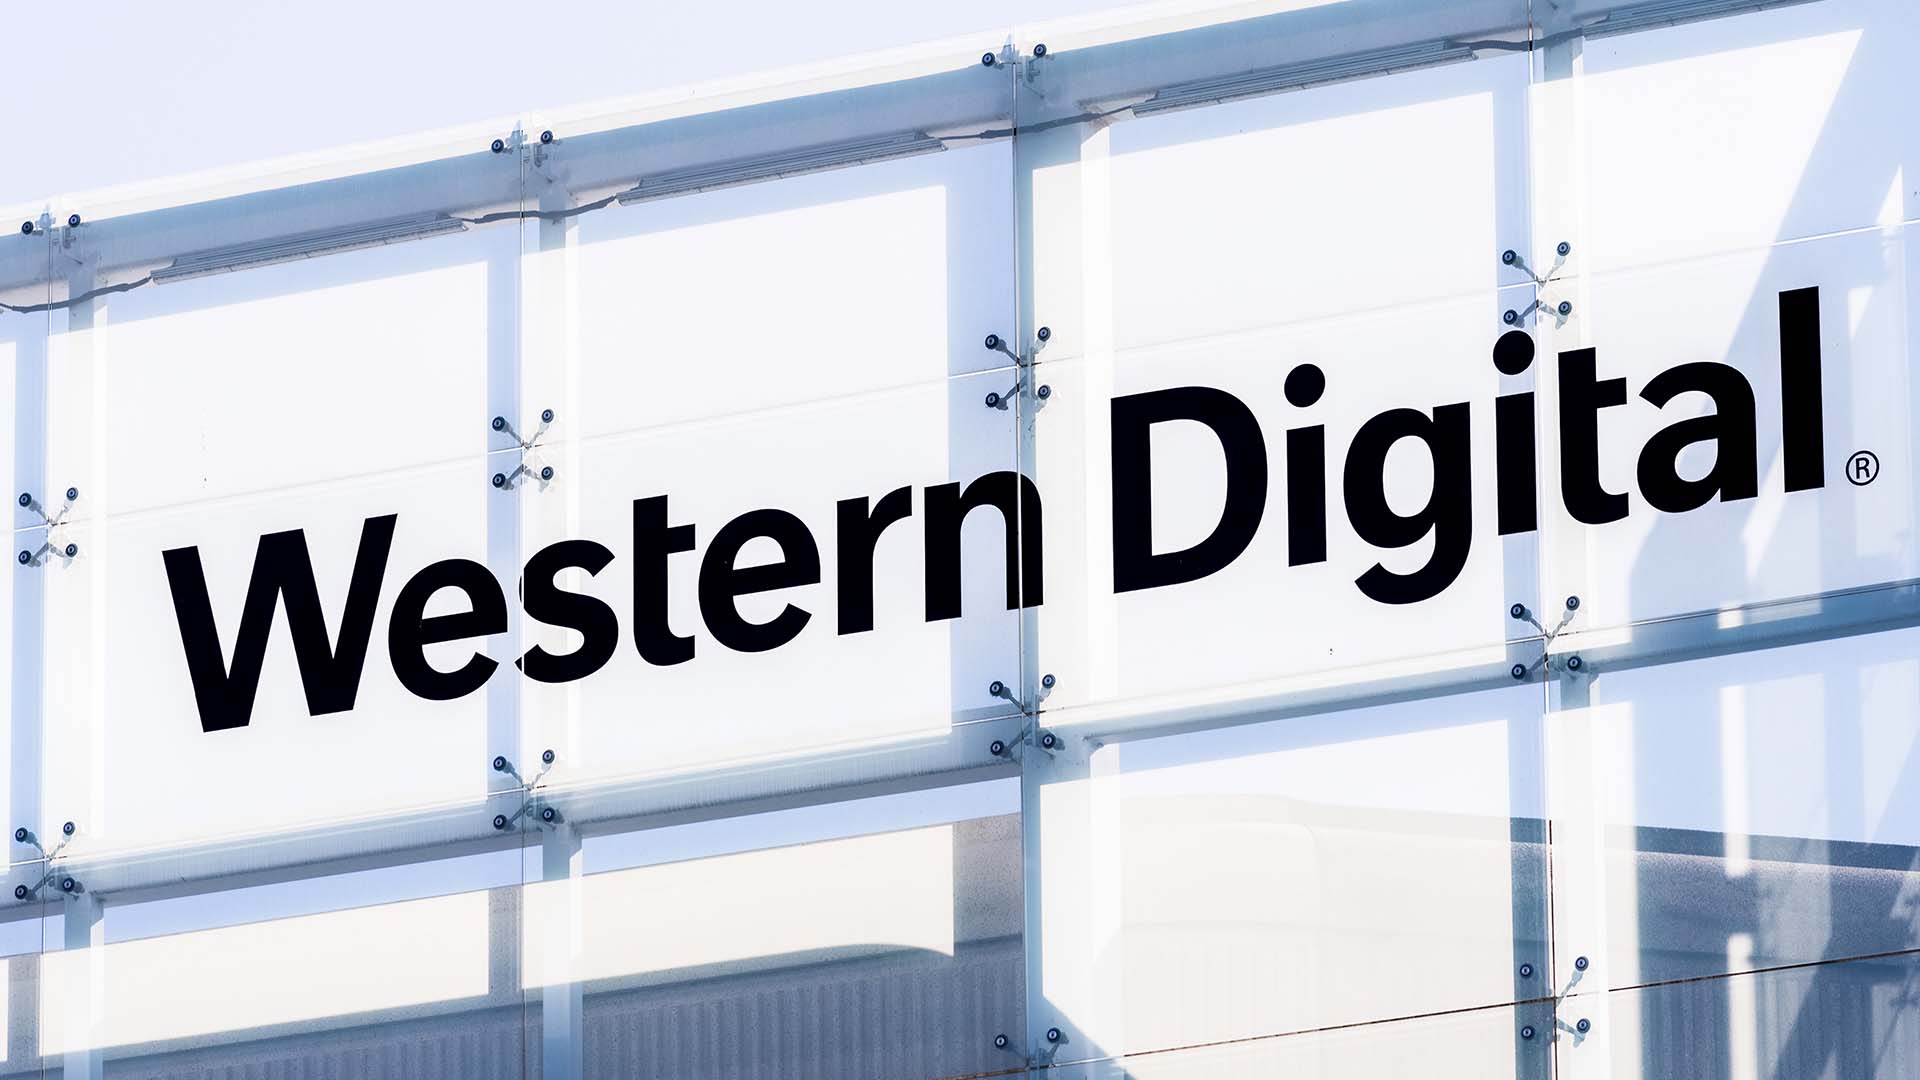 Western_Digital